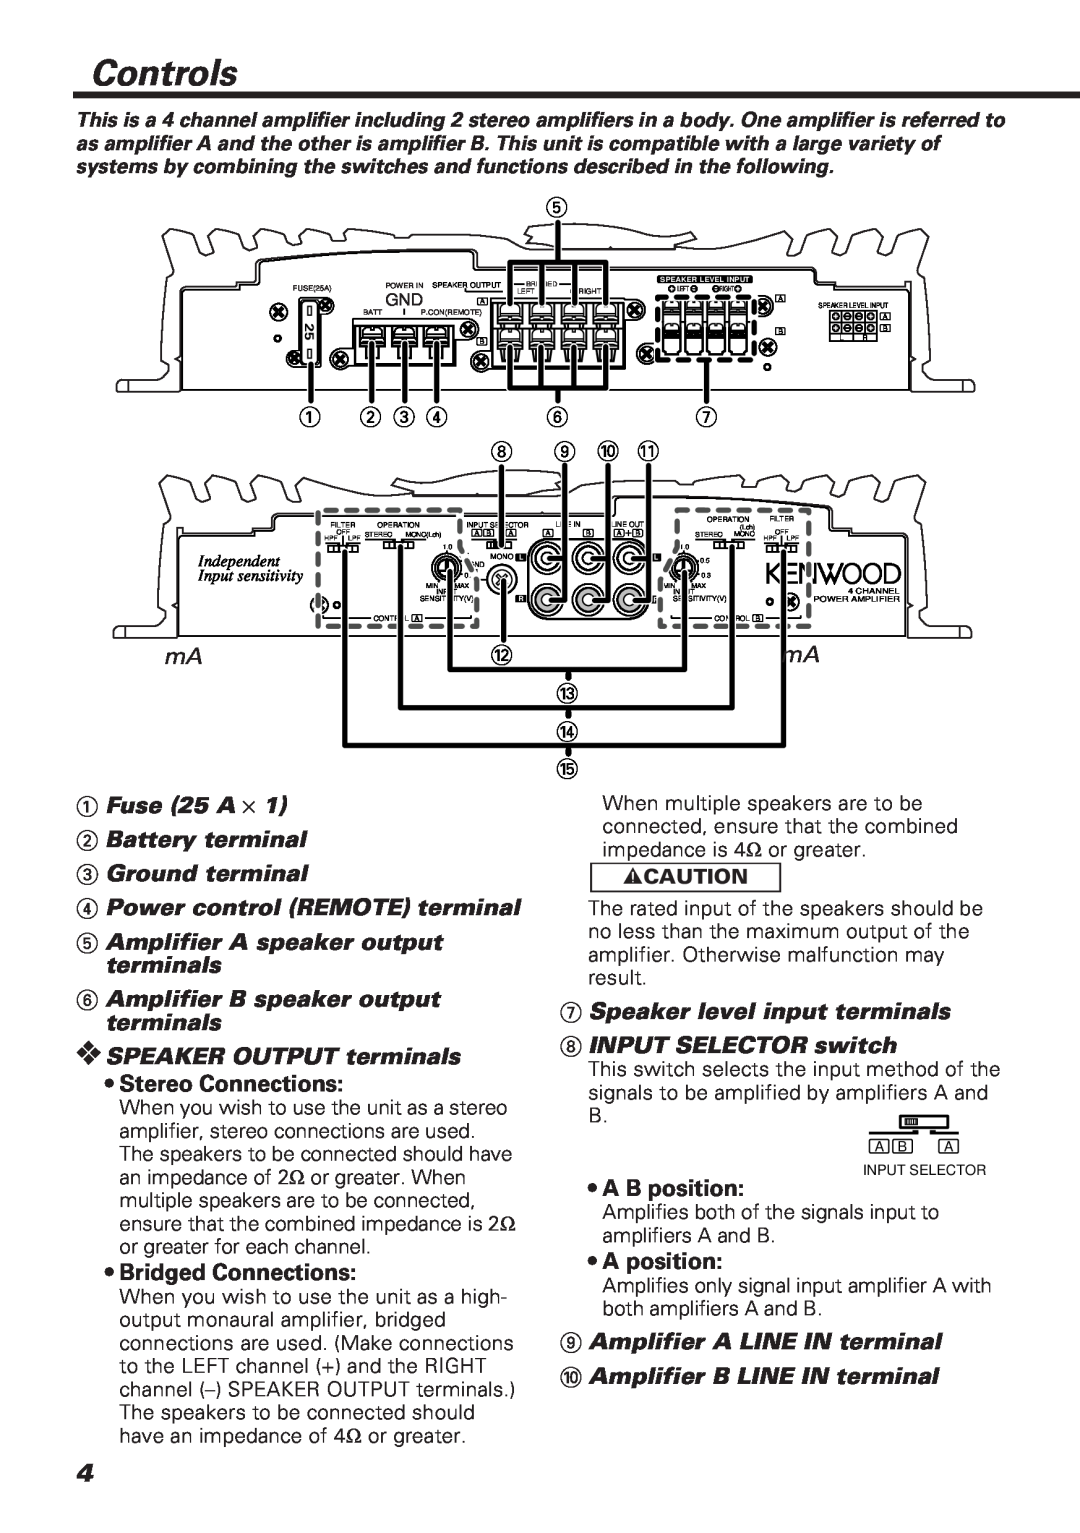 Kenwood KAC-648 instruction manual Controls 